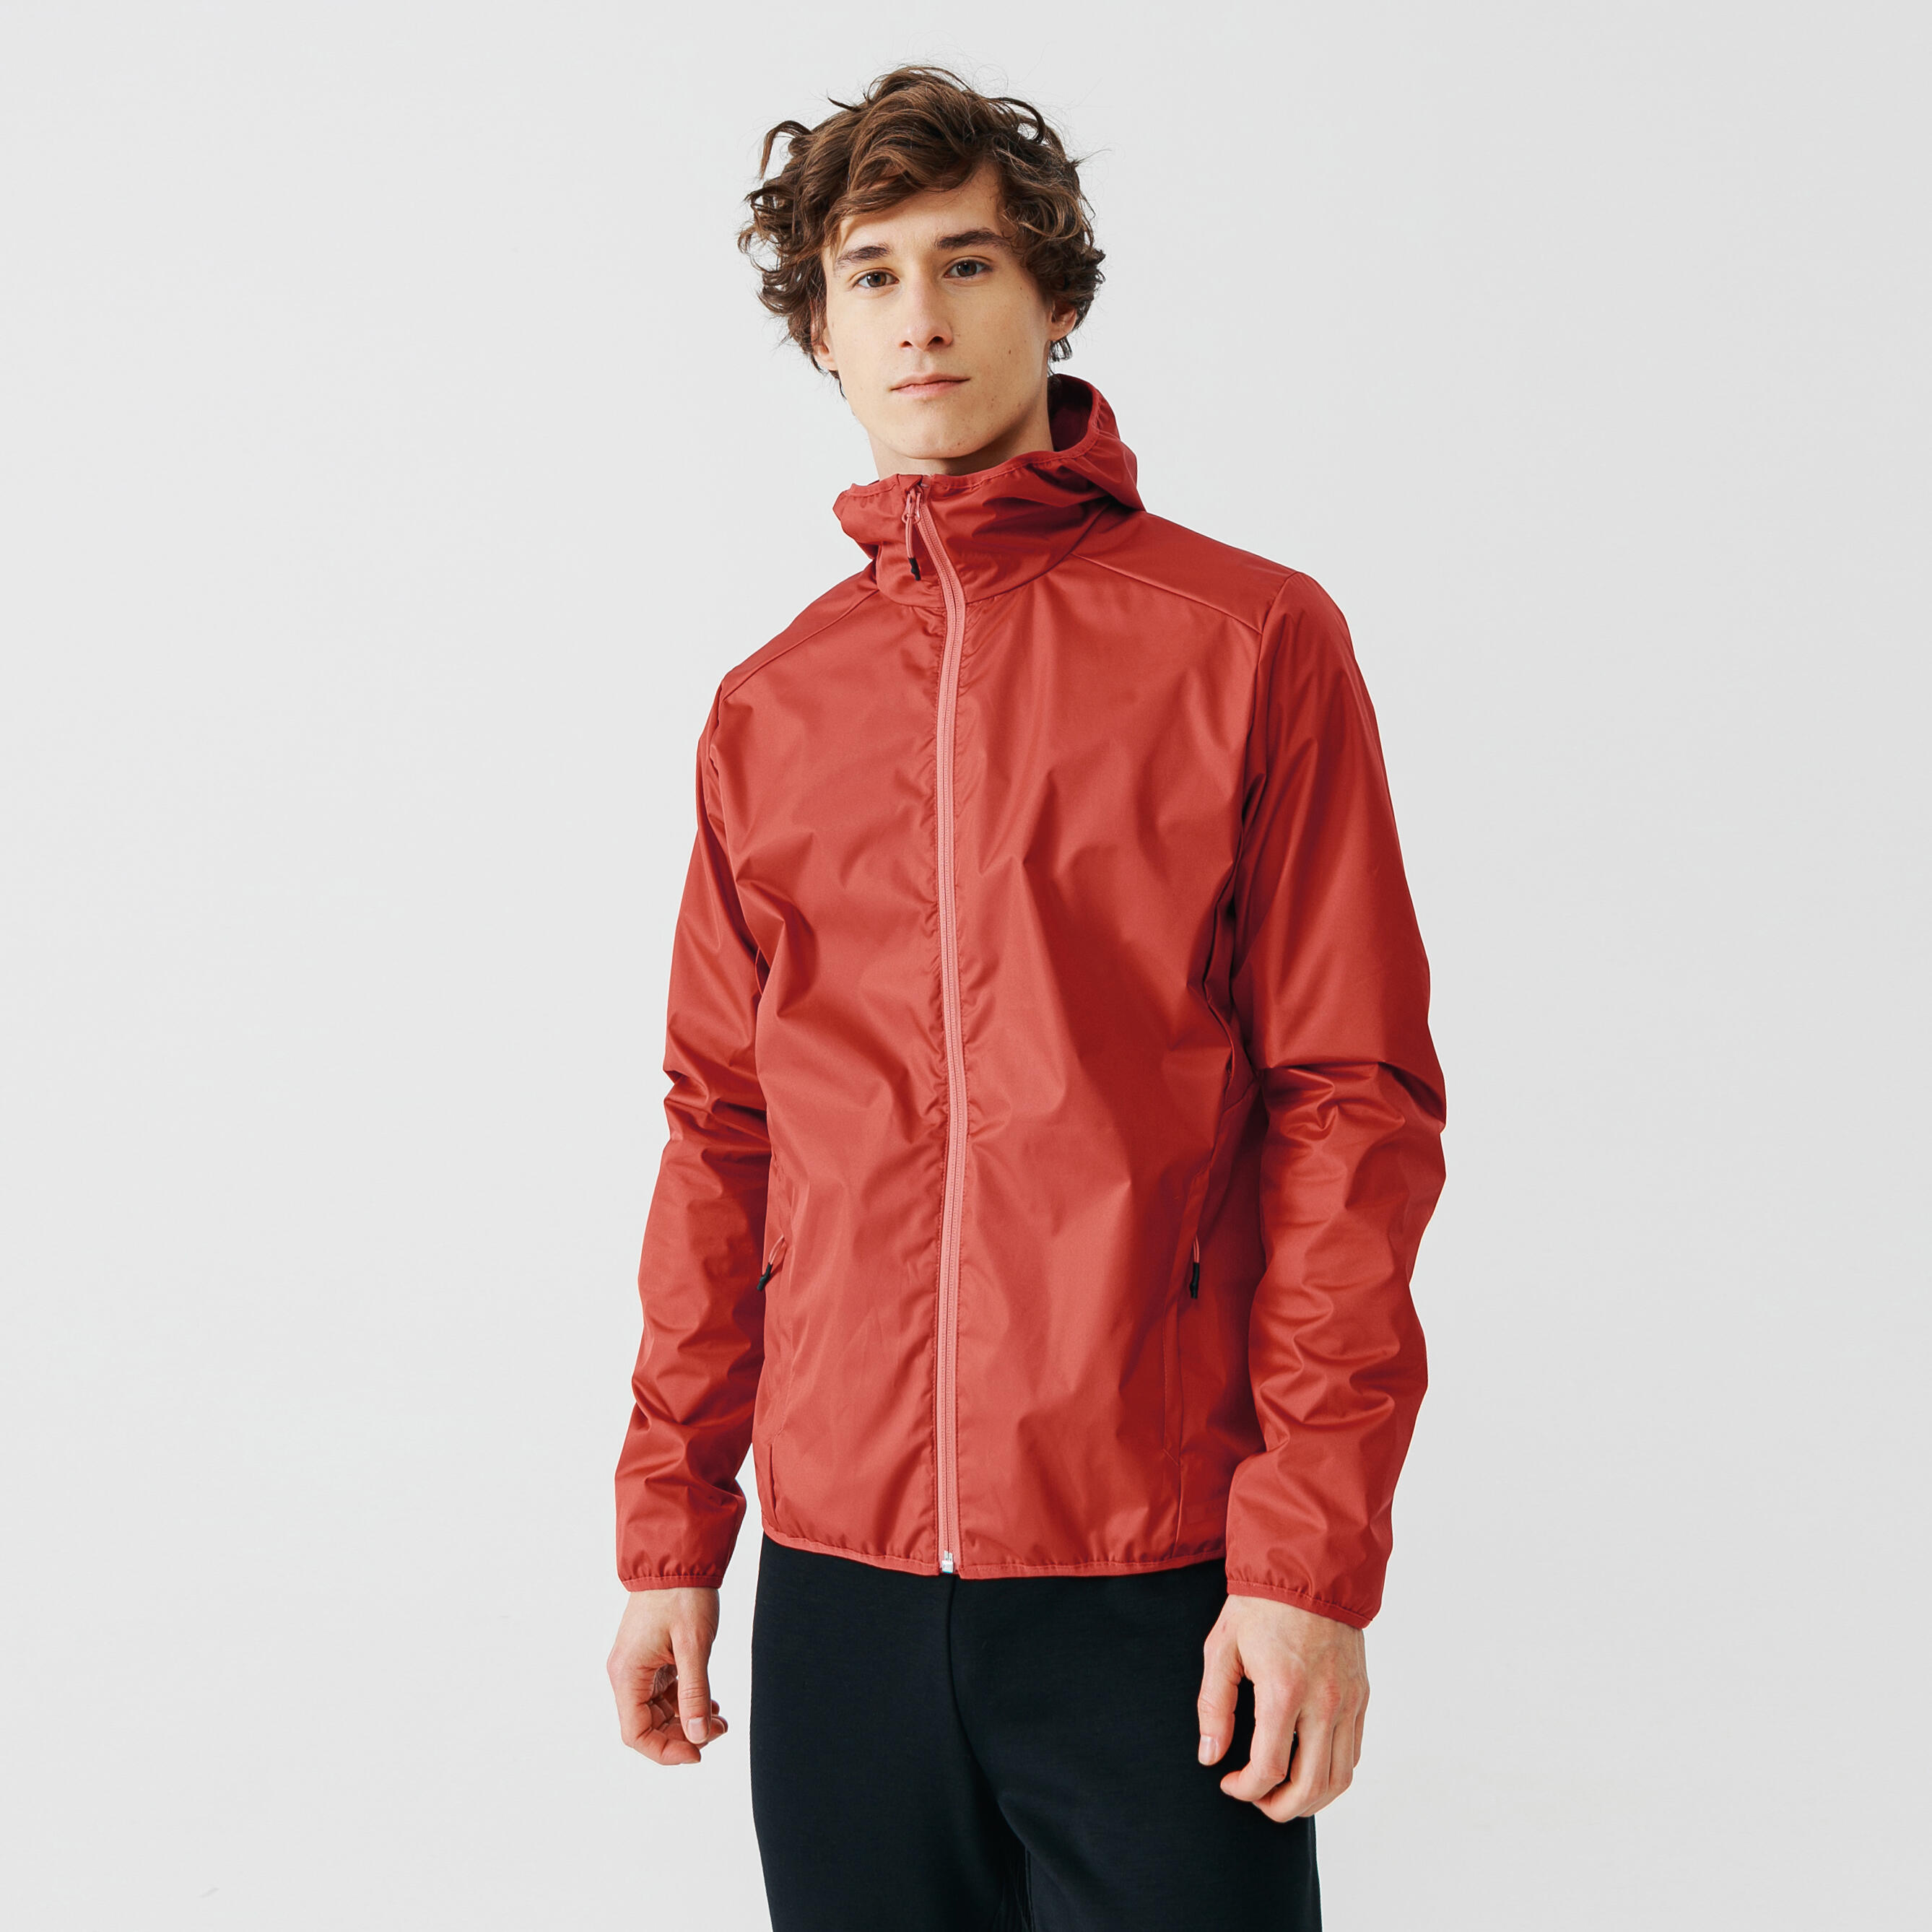 Jachetă protecție ploaie și vânt Alergare Jogging RUN RAIN Roșu Bărbați alergare  Imbracaminte alergare